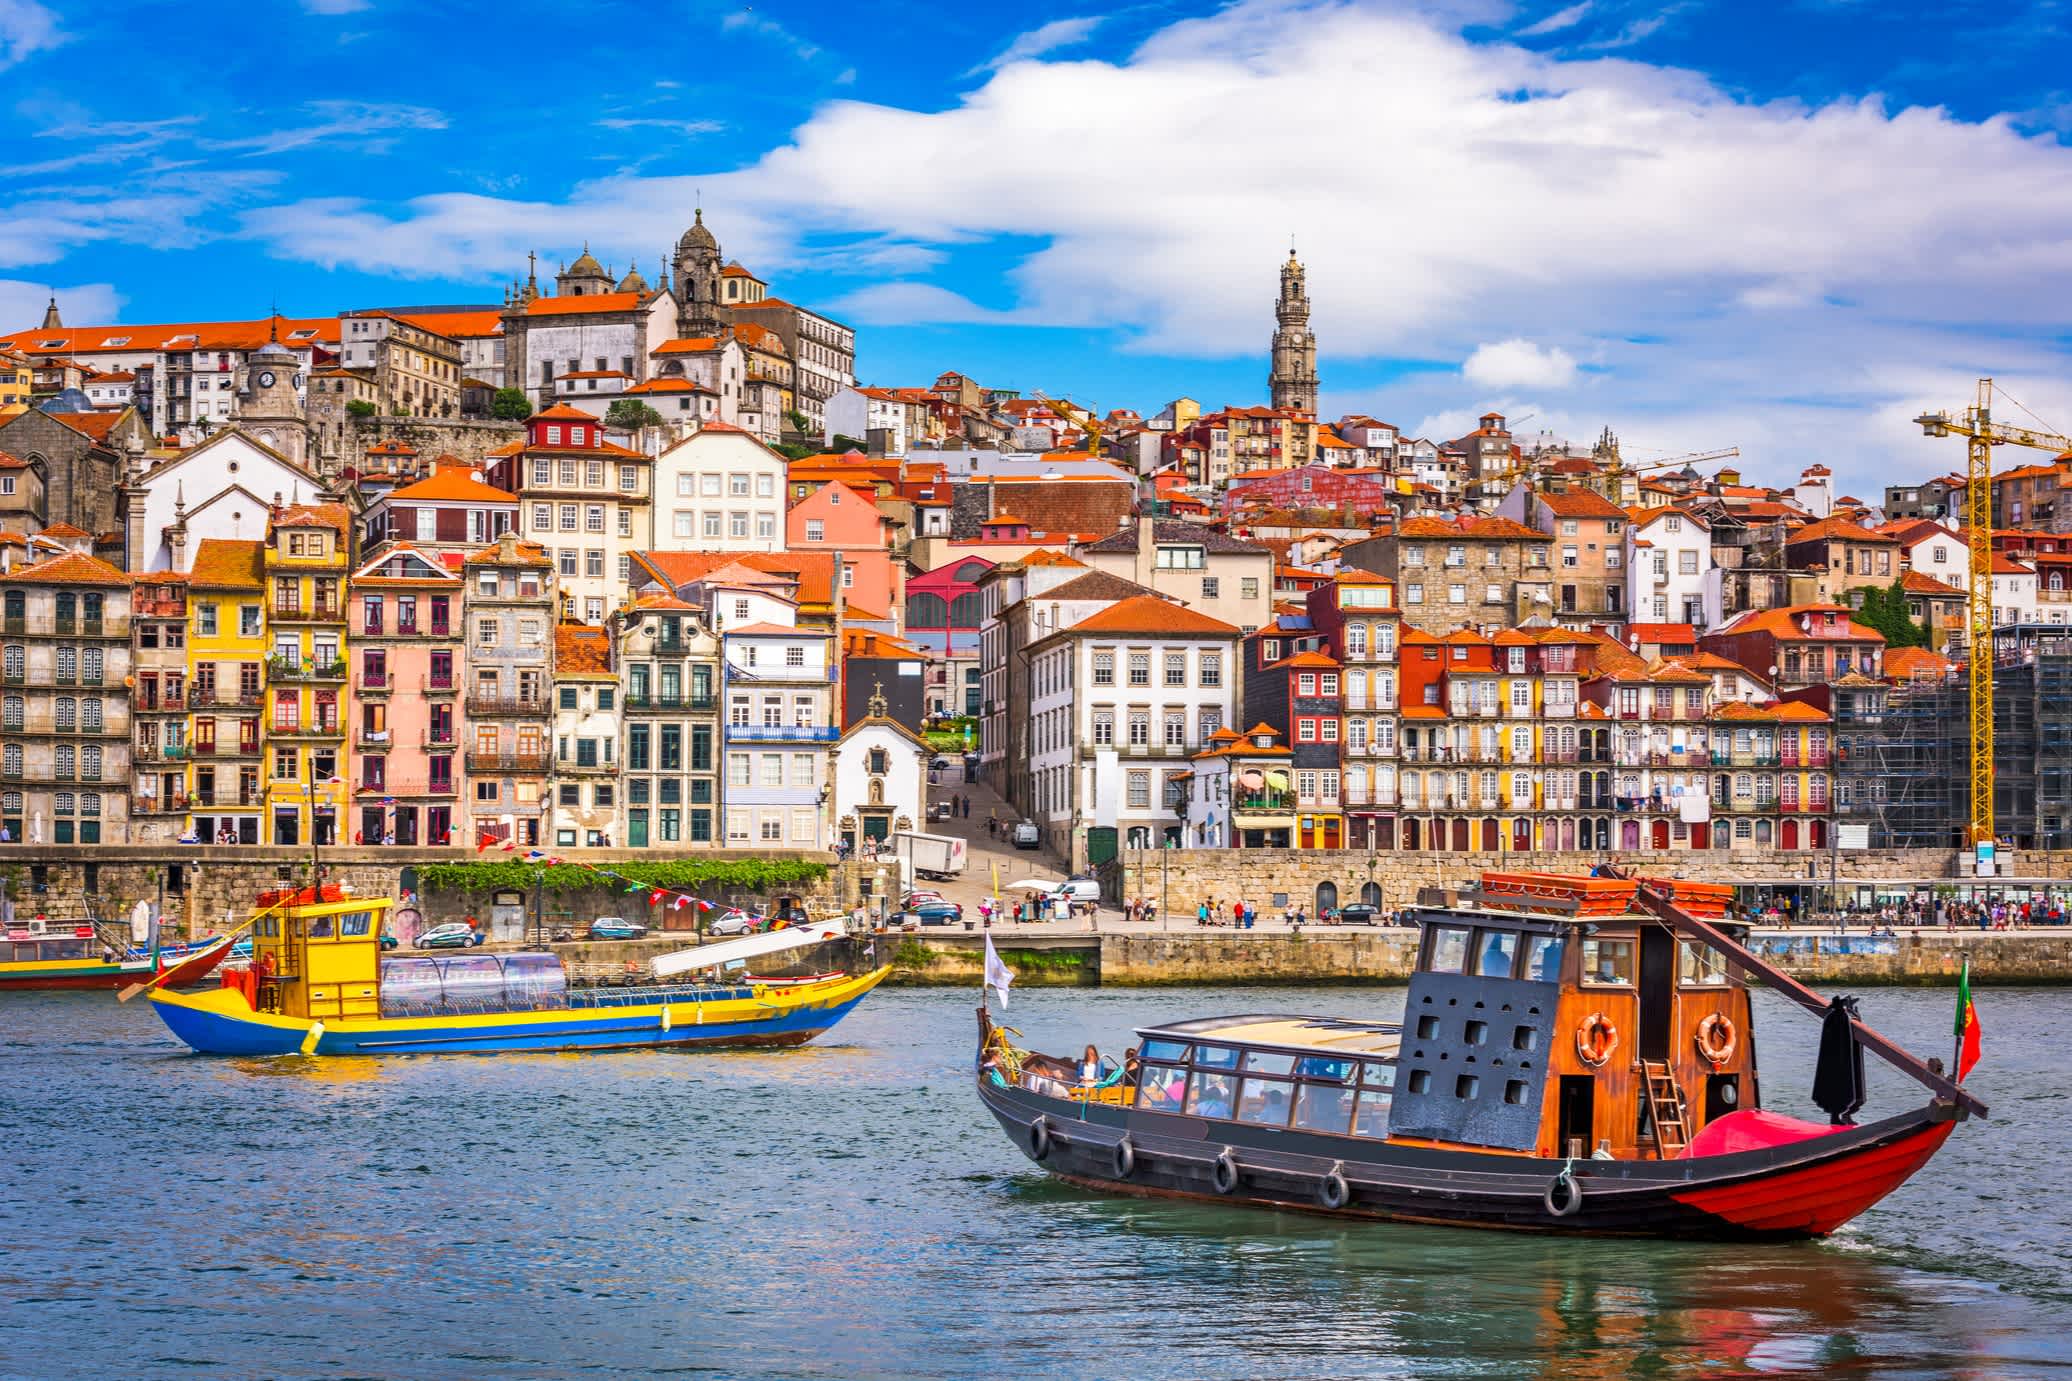 Blick auf den Fluss Douro in Portugal mit Booten und typischen Häuserfassen mit Mosaik-Fliesen